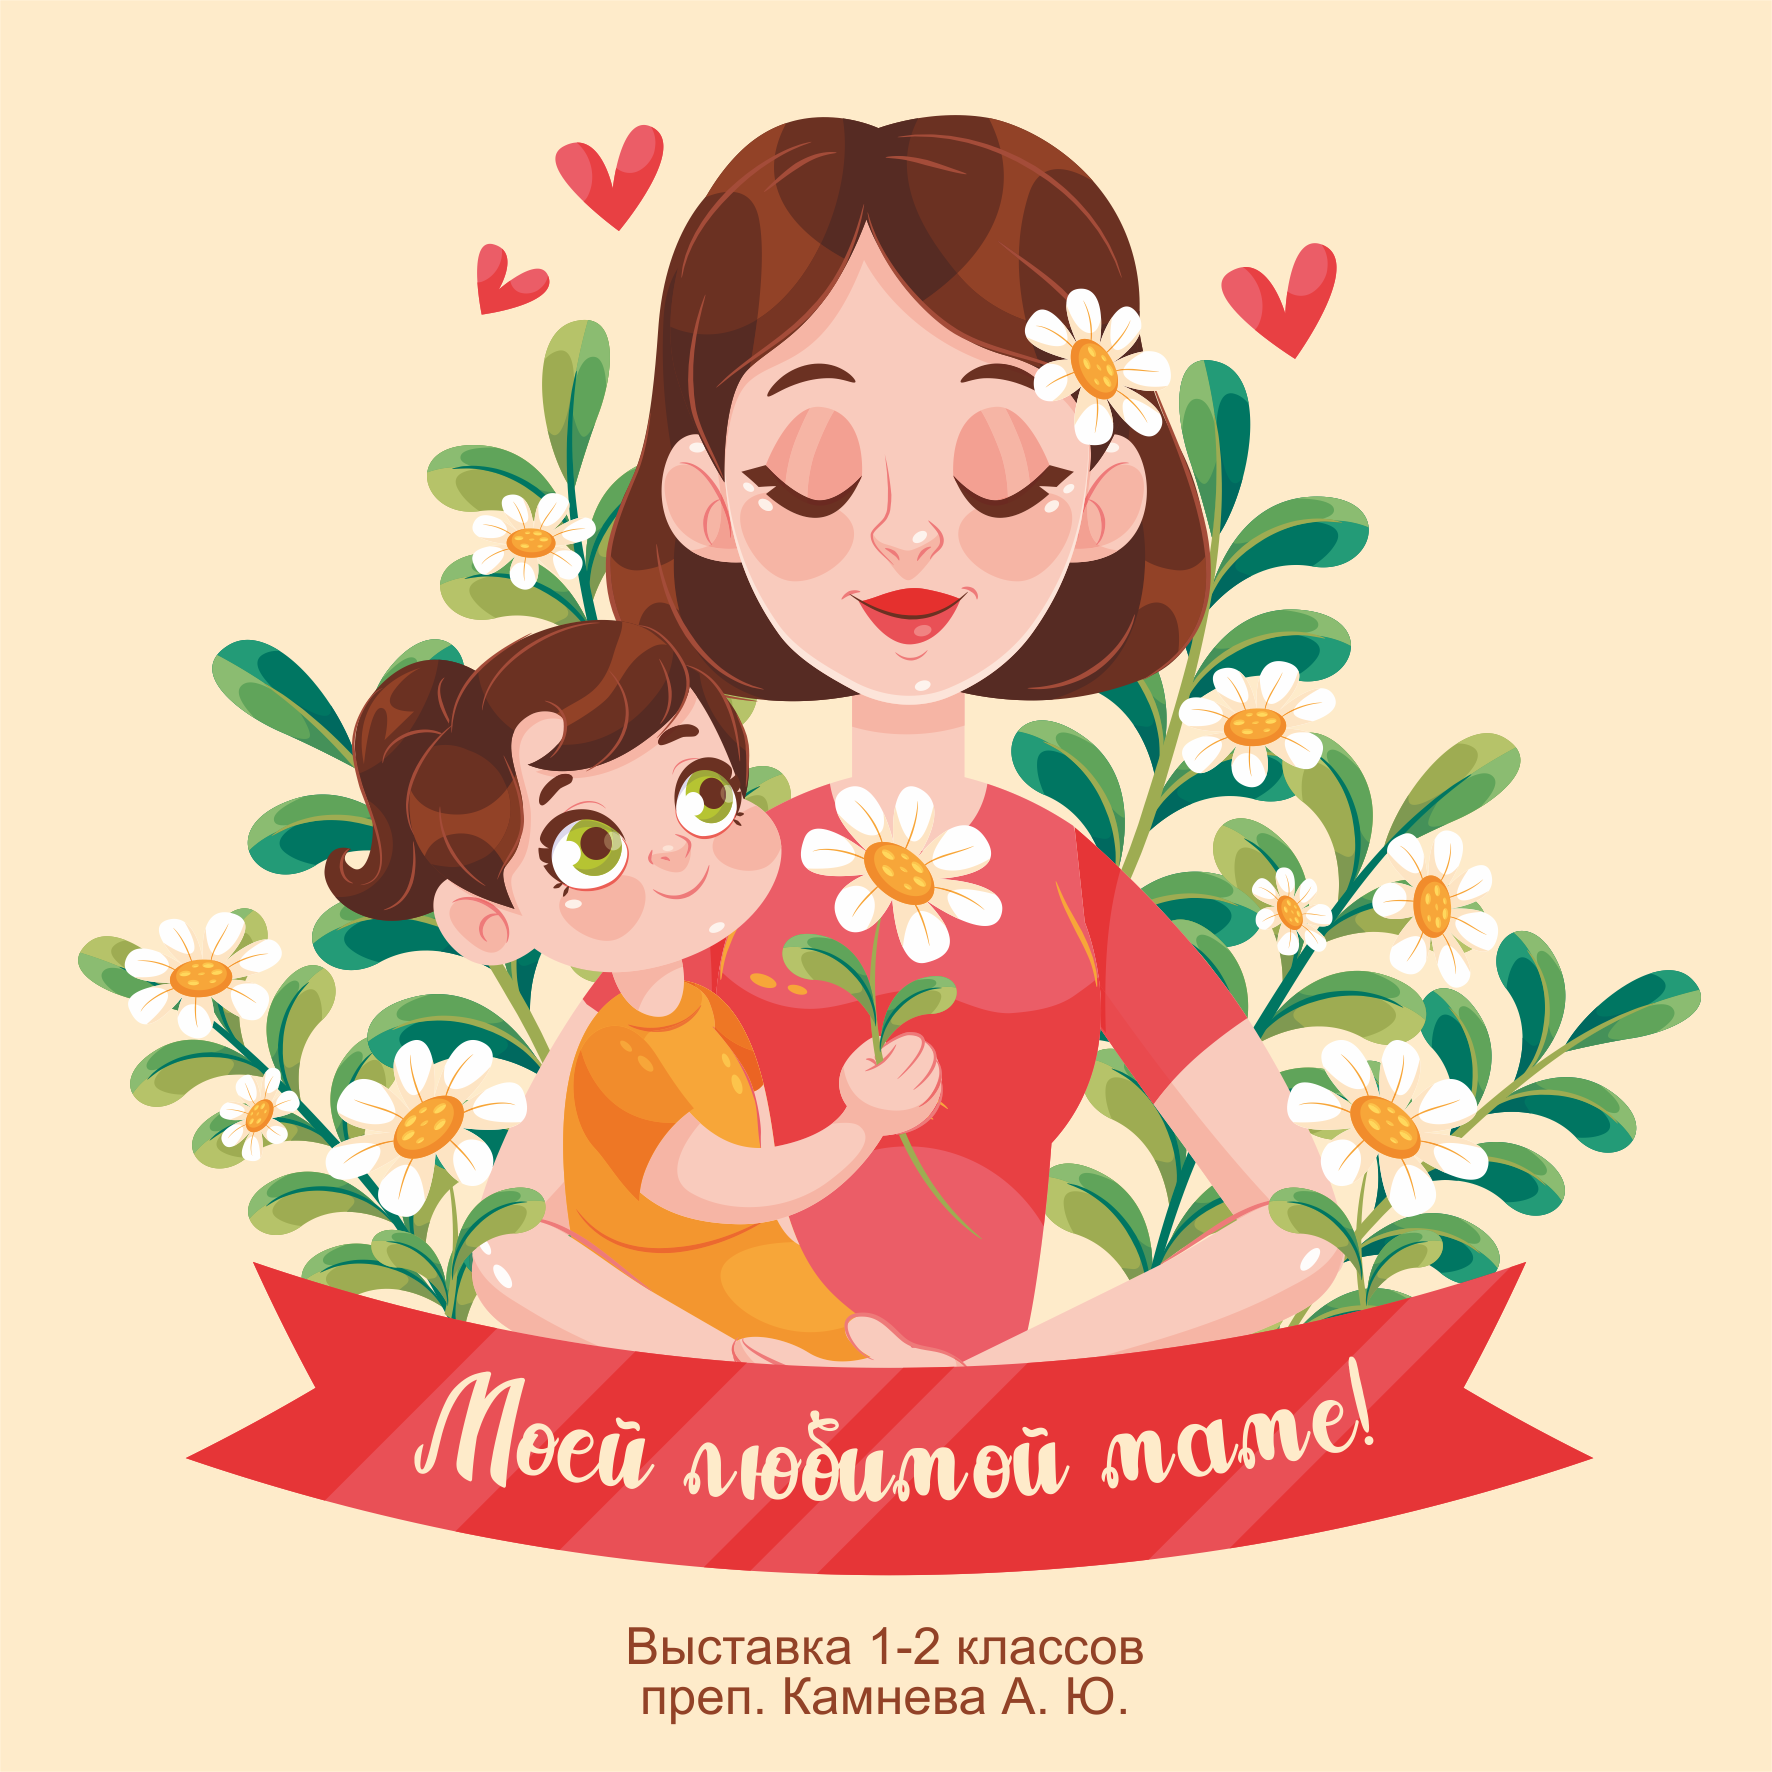 Праздник мама и цветы. День матери. Рисунок ко Дню матери. Открытки с днём матери. Рисунок маме на день матери.